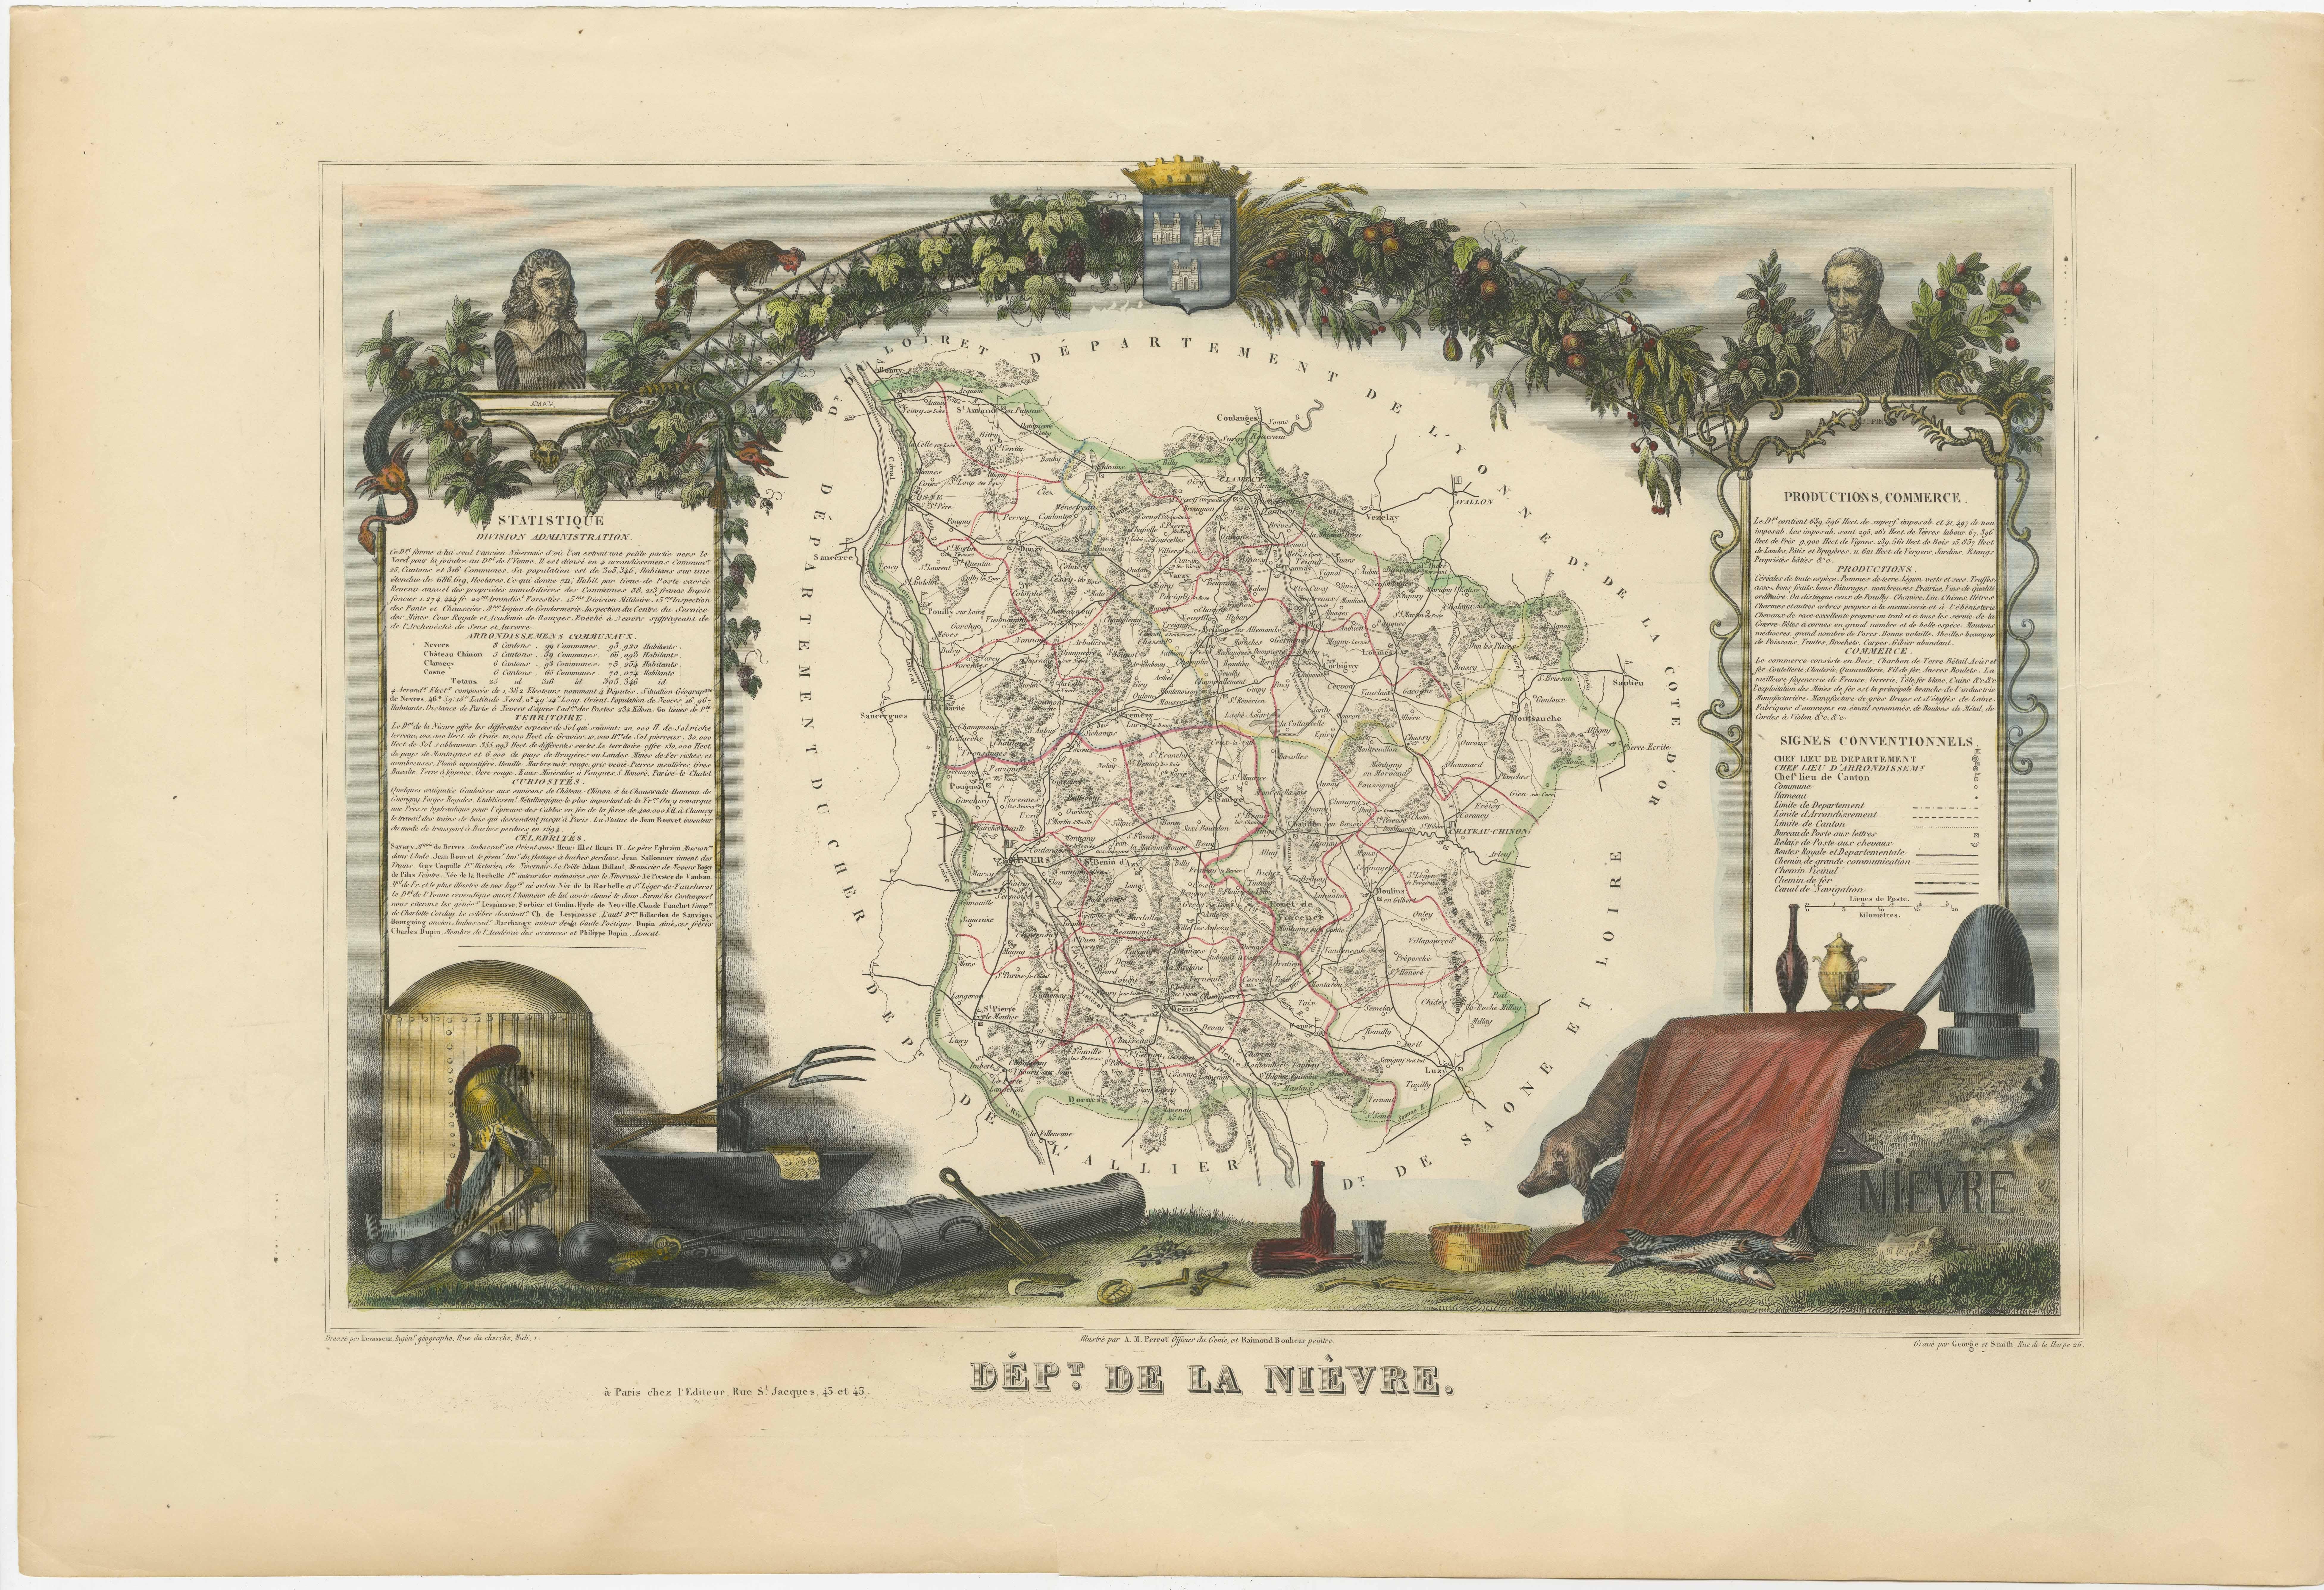 Antike Karte mit dem Titel 'Dept. de la Nièvre'. Karte des französischen Departements Nievre, Frankreich. Dieses Gebiet, das zur prestigeträchtigen Weinregion Burgund oder Bourgogne gehört, ist für die Herstellung des Weißweins Pouilly Fumé bekannt.